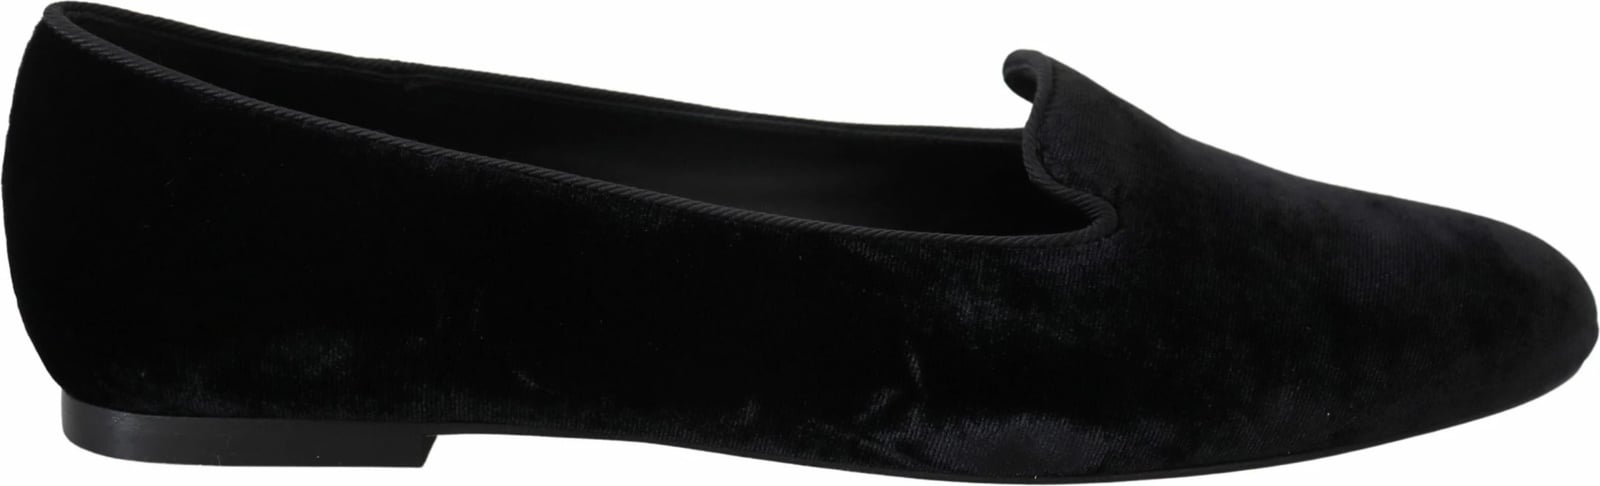 Këpucë për femra Dolce & Gabbana, të zeza 